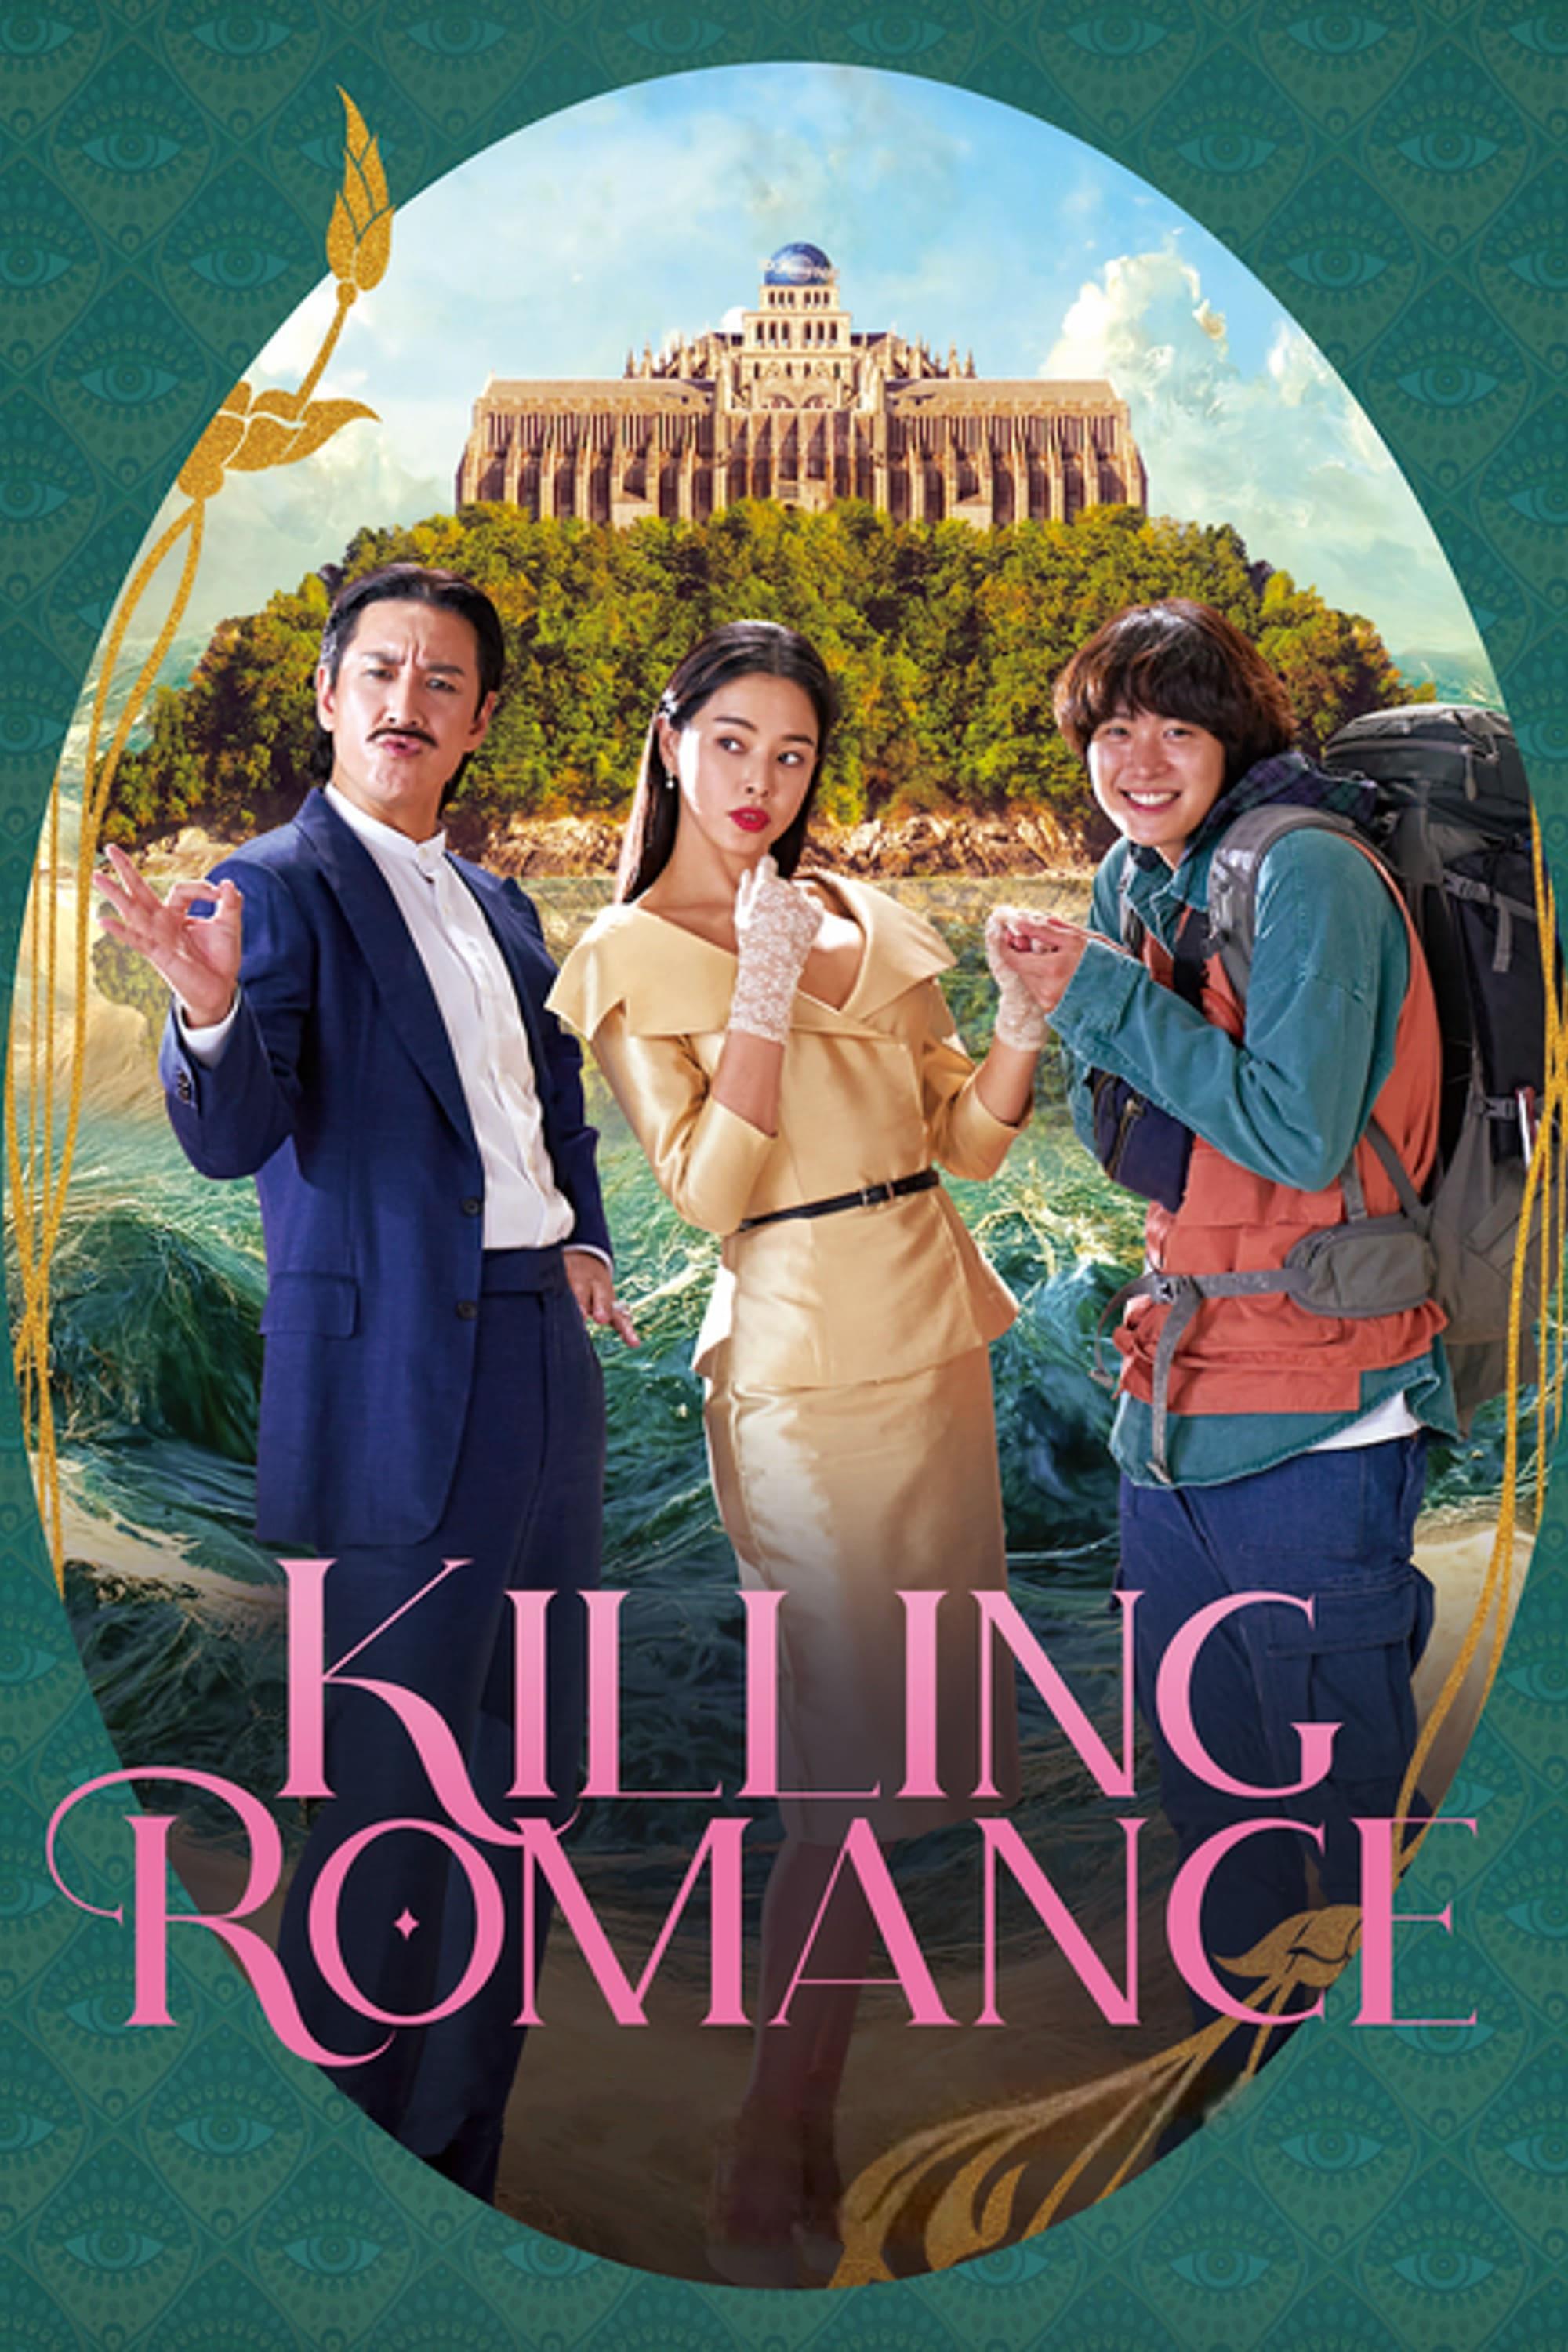 Killing Romance poster